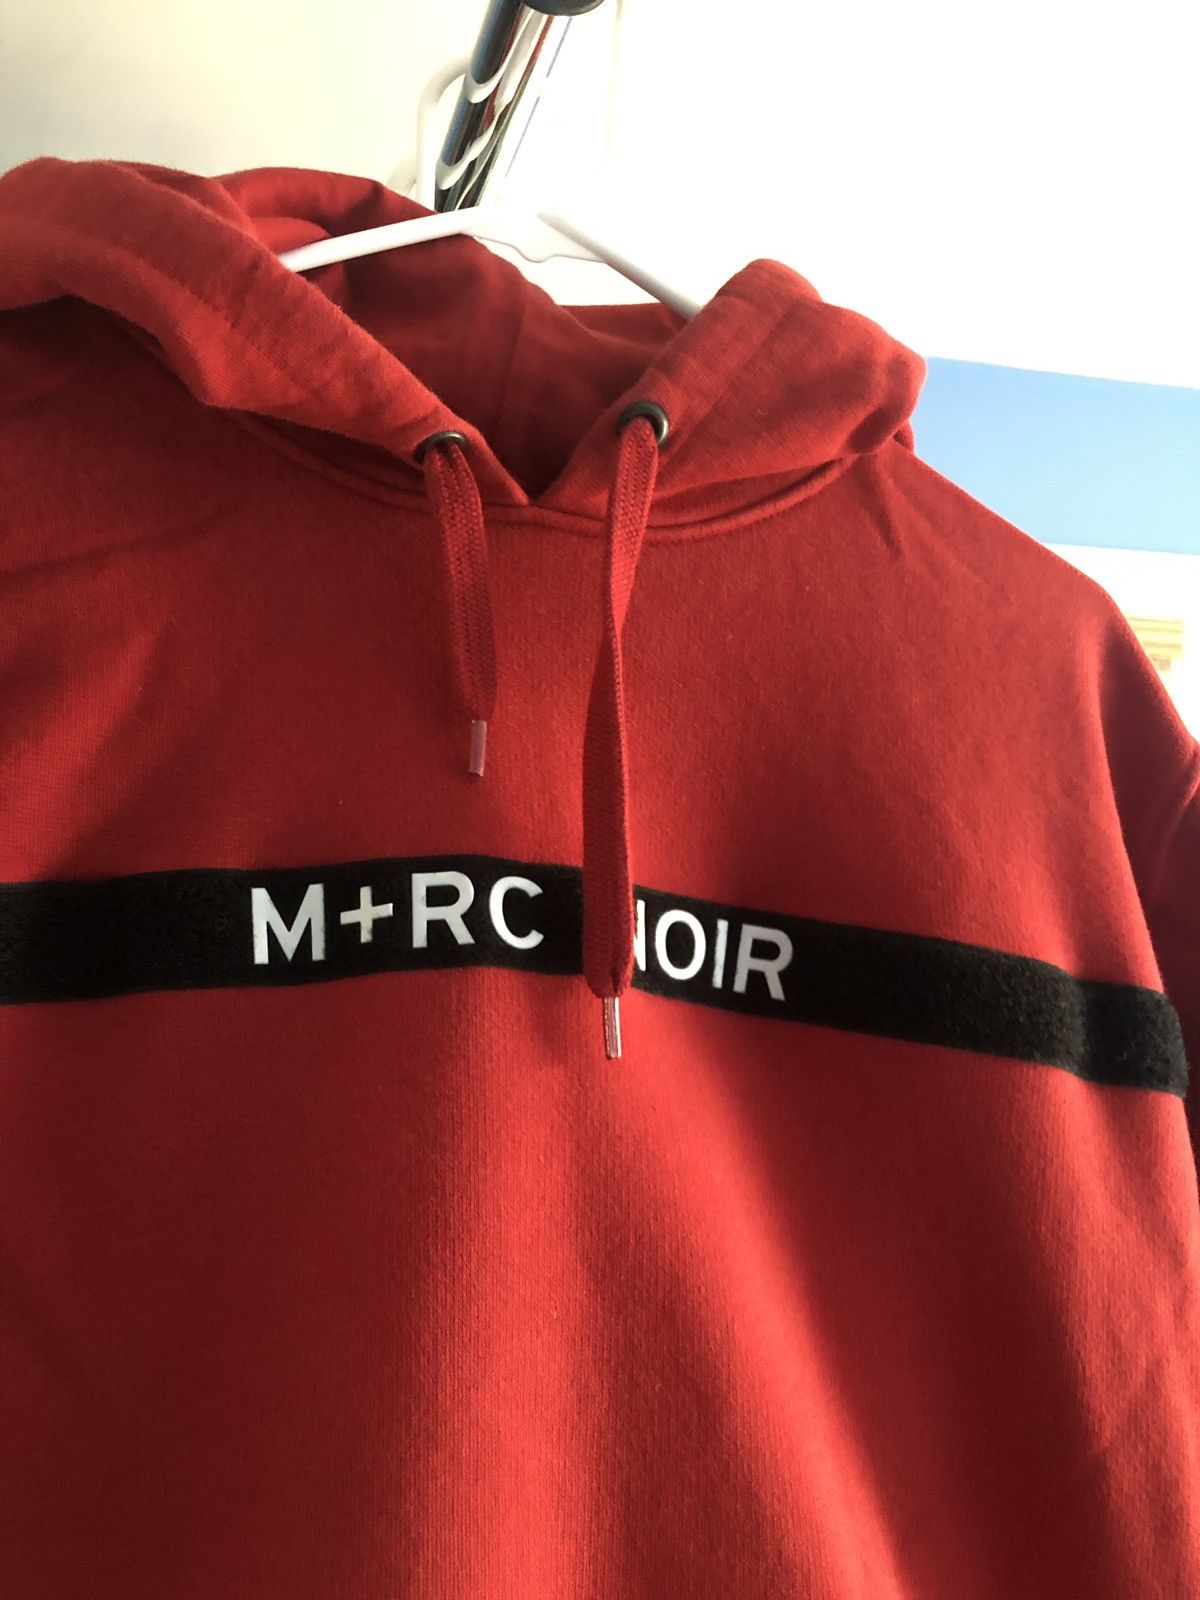 代引き人気 M+RC M+RC NOIR M+RC VELCRO NOIR HOODIE RED Latest メンズ